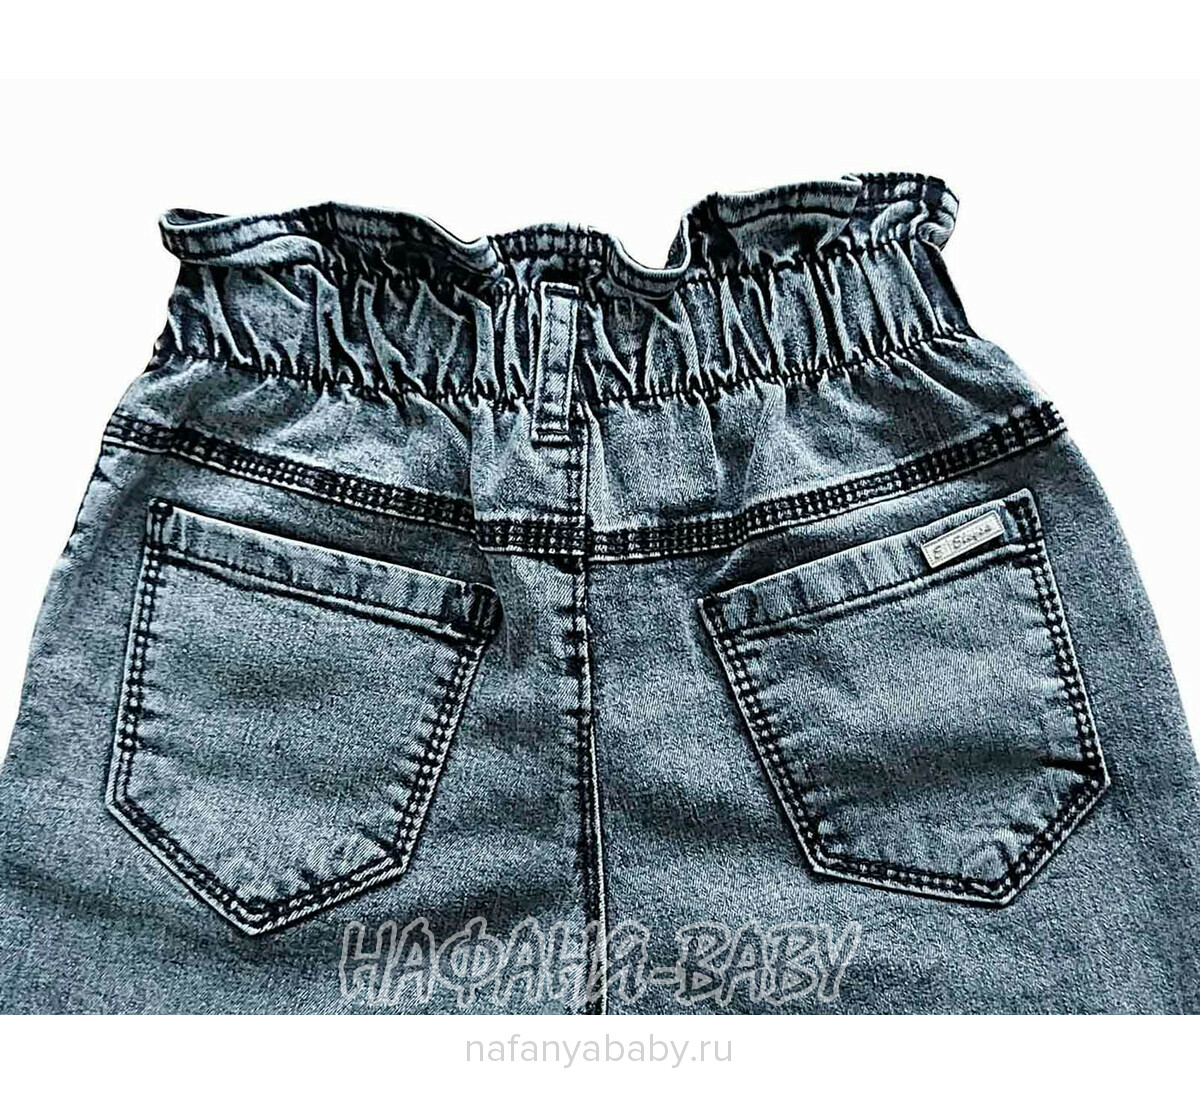 Джинсы подростковые ELEYSA Jeans арт: 6107, 13-16 лет, цвет черный, оптом Турция